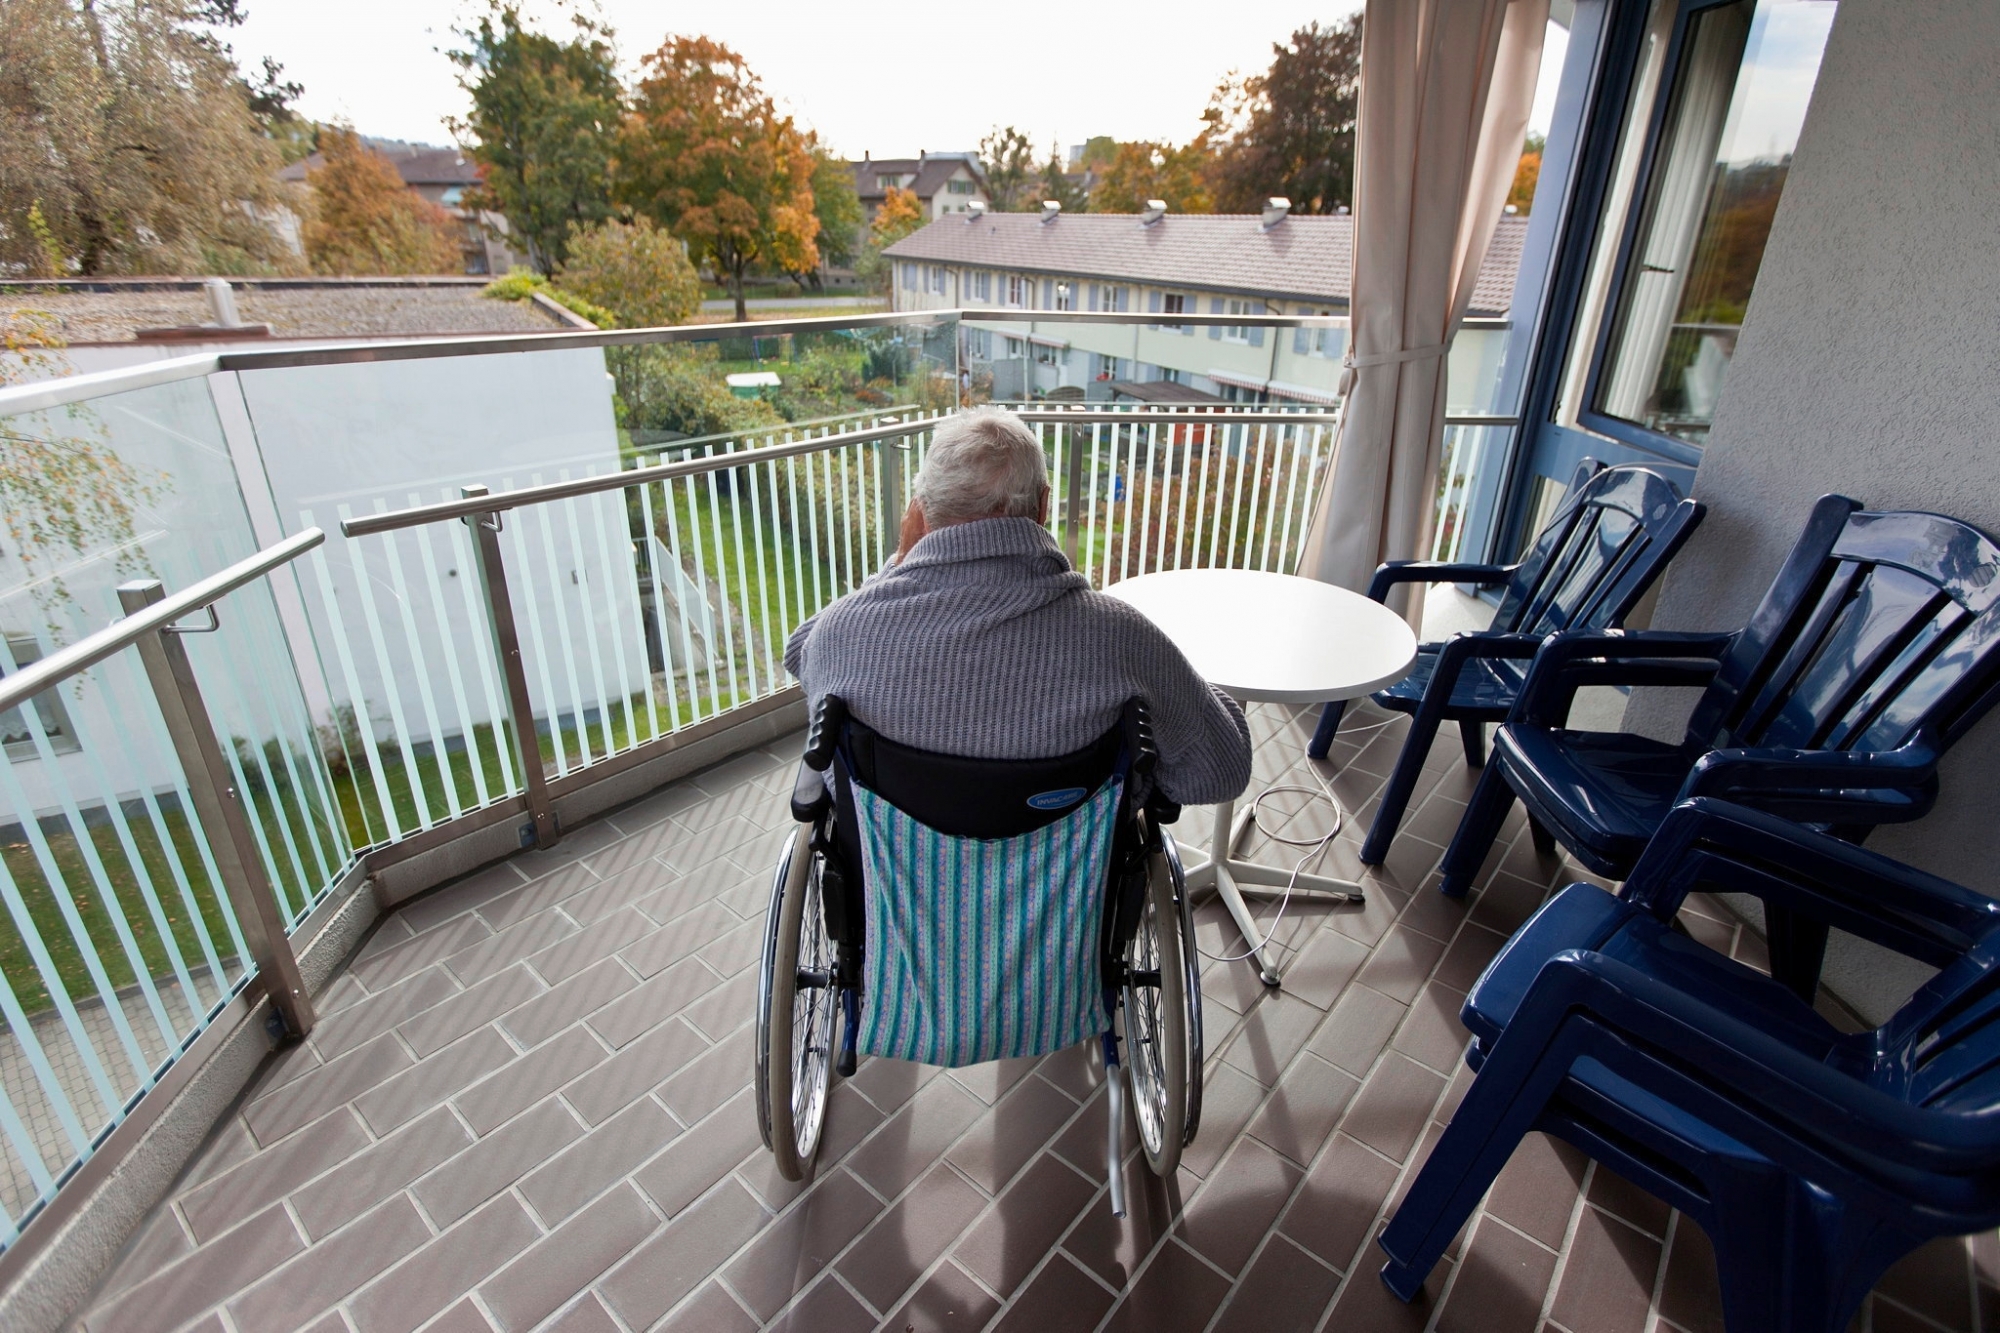 Selon les nouvelles règles de l’Académie suisse des sciences médicales, une personne âgée en chaise roulante suite à un cancer pourrait ne pas être accueillie en cas de surcharge hospitalière, affirme Inclusion-Handicap. (illustration)